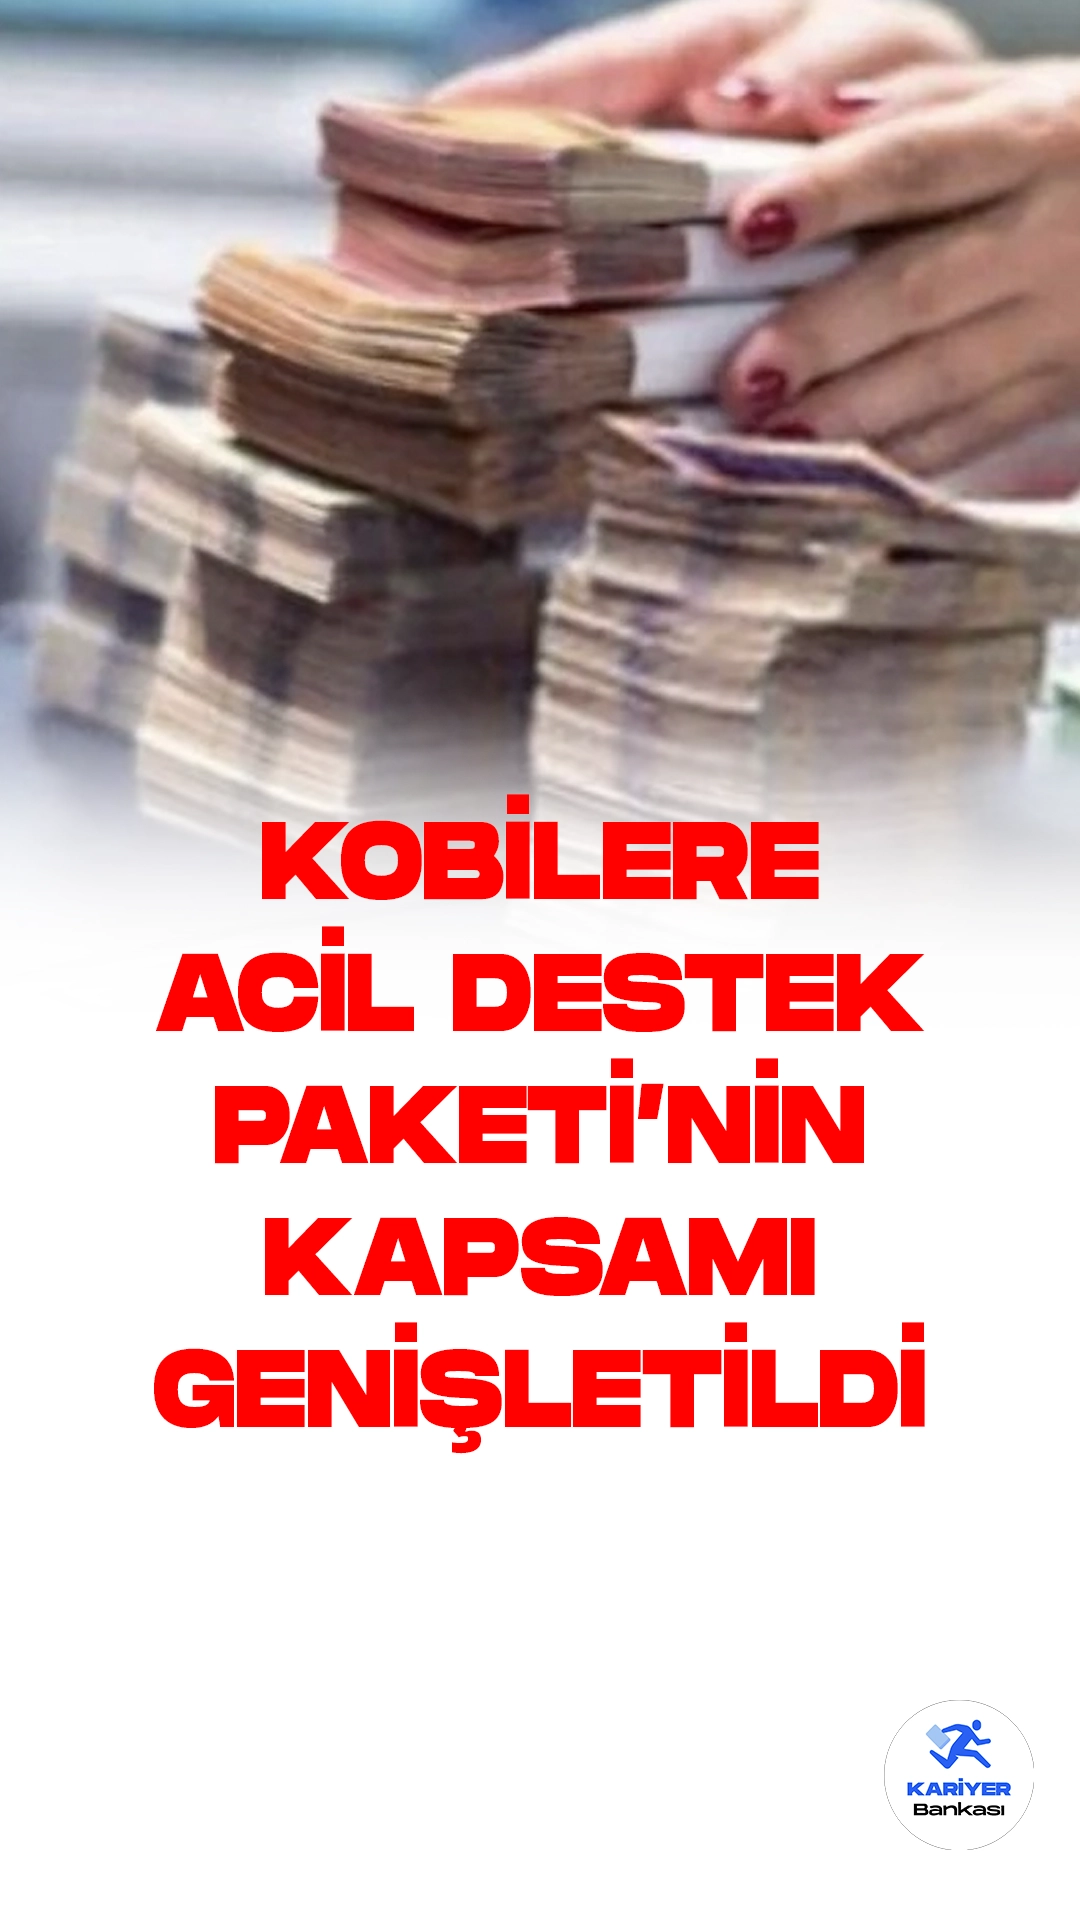 KOSGEB Acil Destek Paketi İle Selden Etkilenen İllerdeki KOBİ'lere Finansal Destek.Küçük ve Orta Ölçekli İşletmeleri Geliştirme ve Destekleme İdaresi Başkanlığı (KOSGEB), Artvin, Bolu, Giresun, Karabük, Kocaeli, Rize, Sakarya ve Trabzon illerindeki selden etkilenen KOBİ'ler için "Acil Destek Paketi" sunuyor.